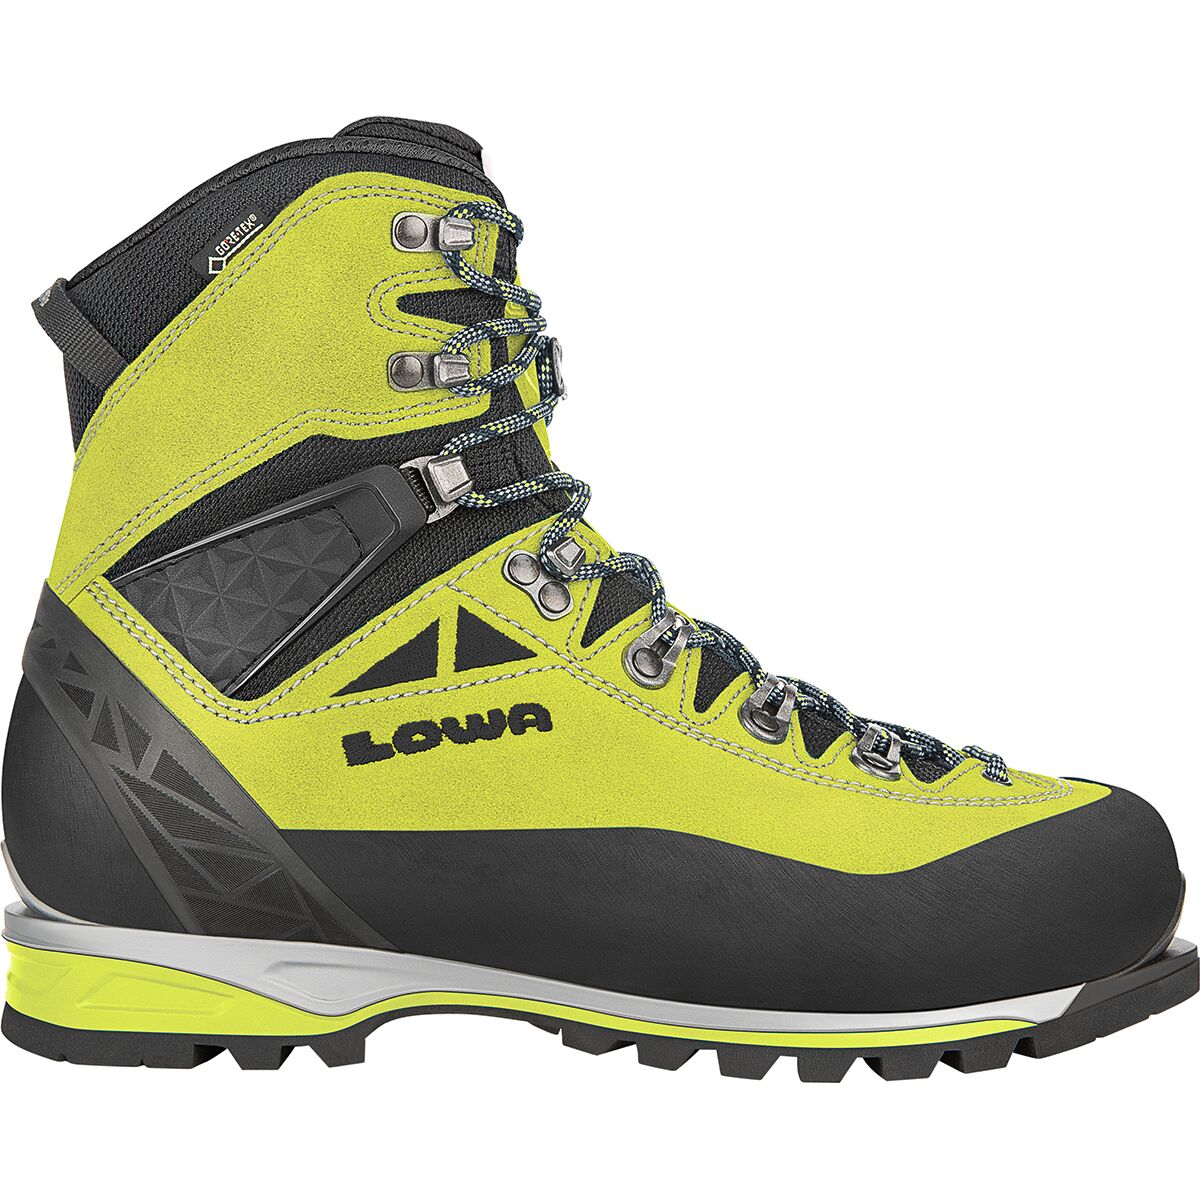 Lowa Alpine Expert GTX Mountaineering Boot - Men's